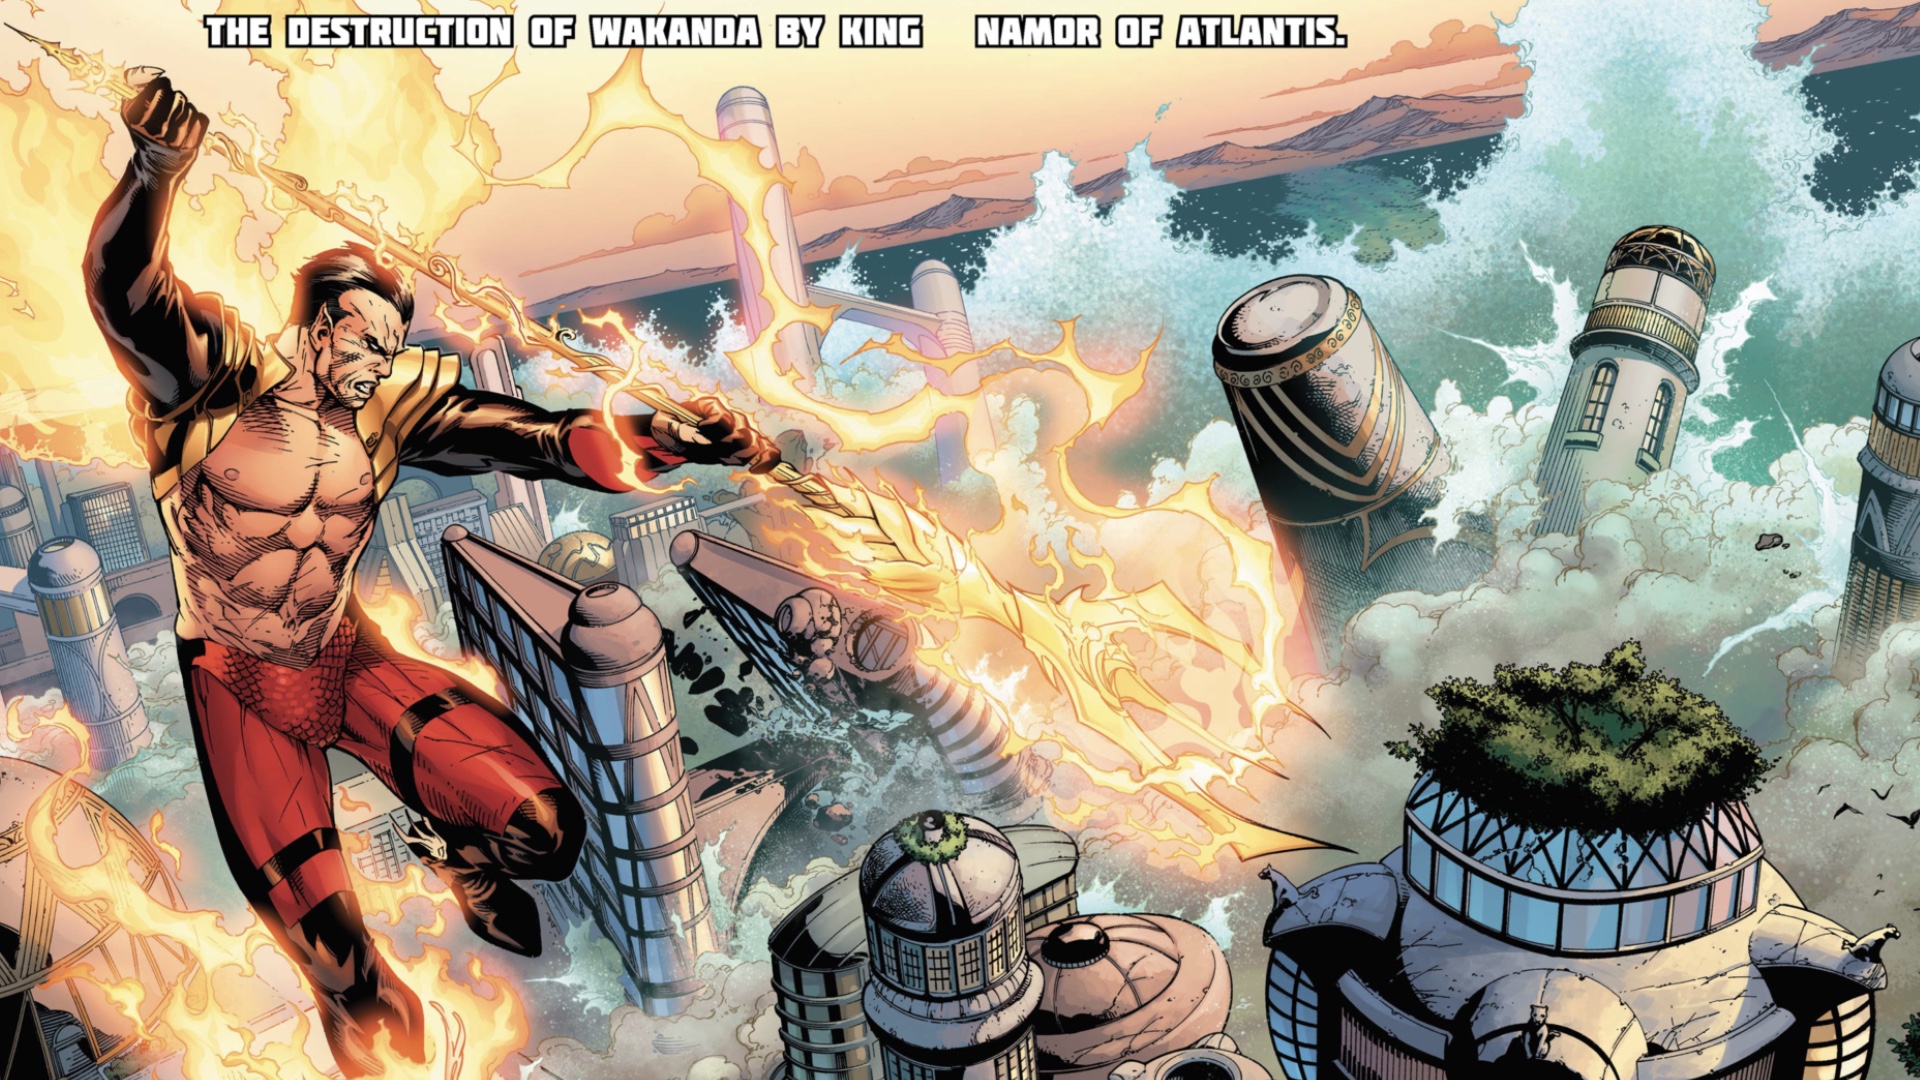 Avengers vs. X-Men #8 panel